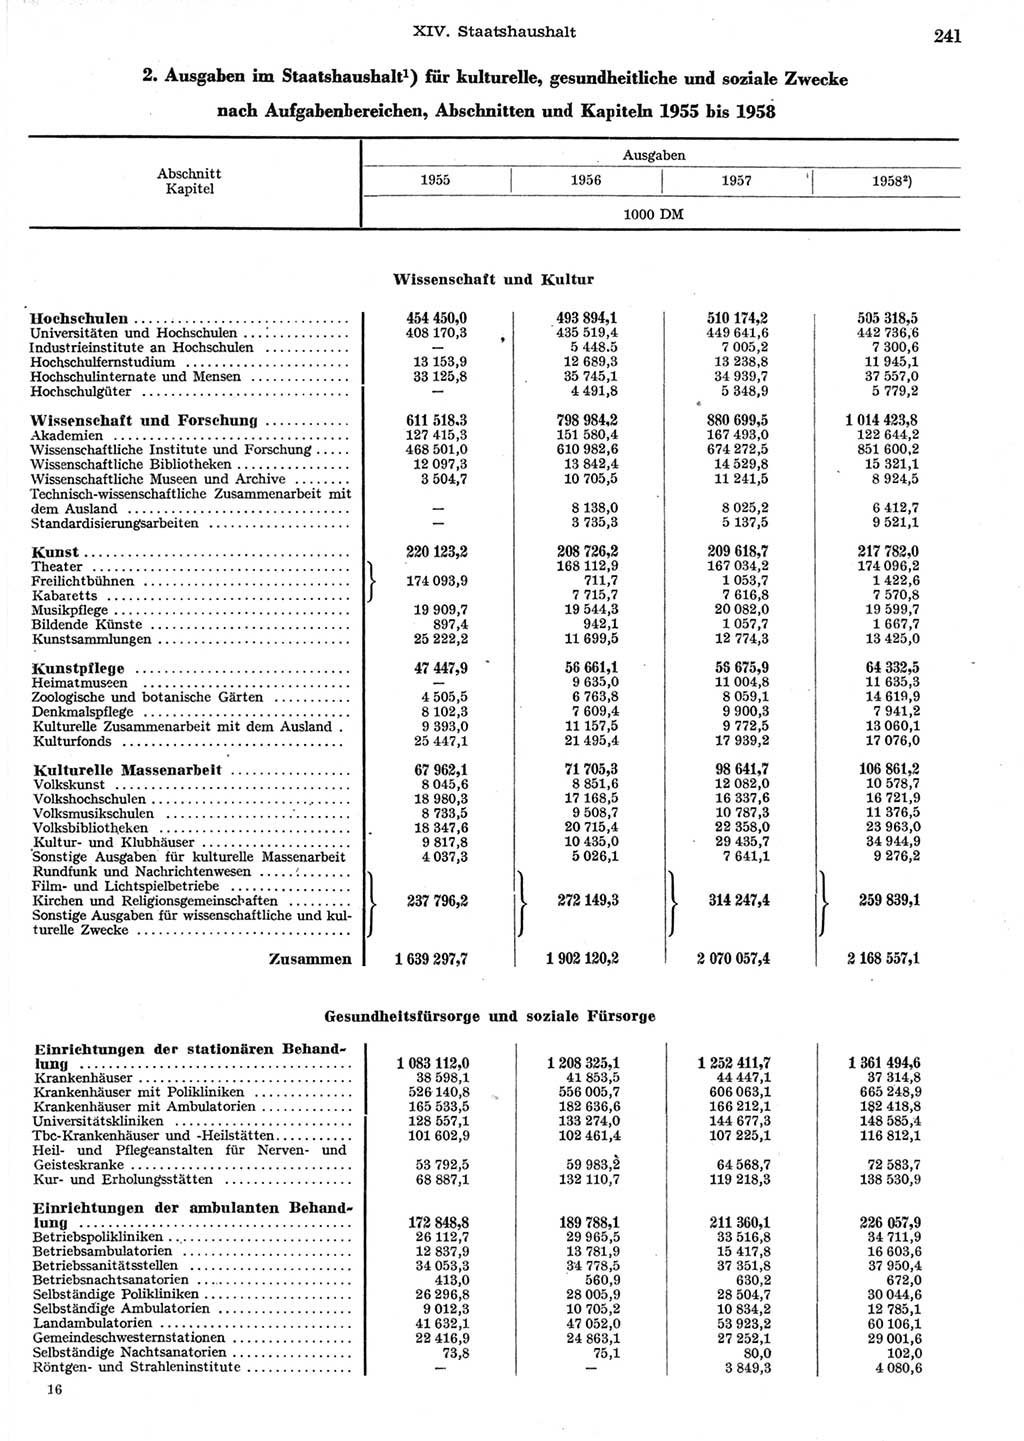 Statistisches Jahrbuch der Deutschen Demokratischen Republik (DDR) 1958, Seite 241 (Stat. Jb. DDR 1958, S. 241)